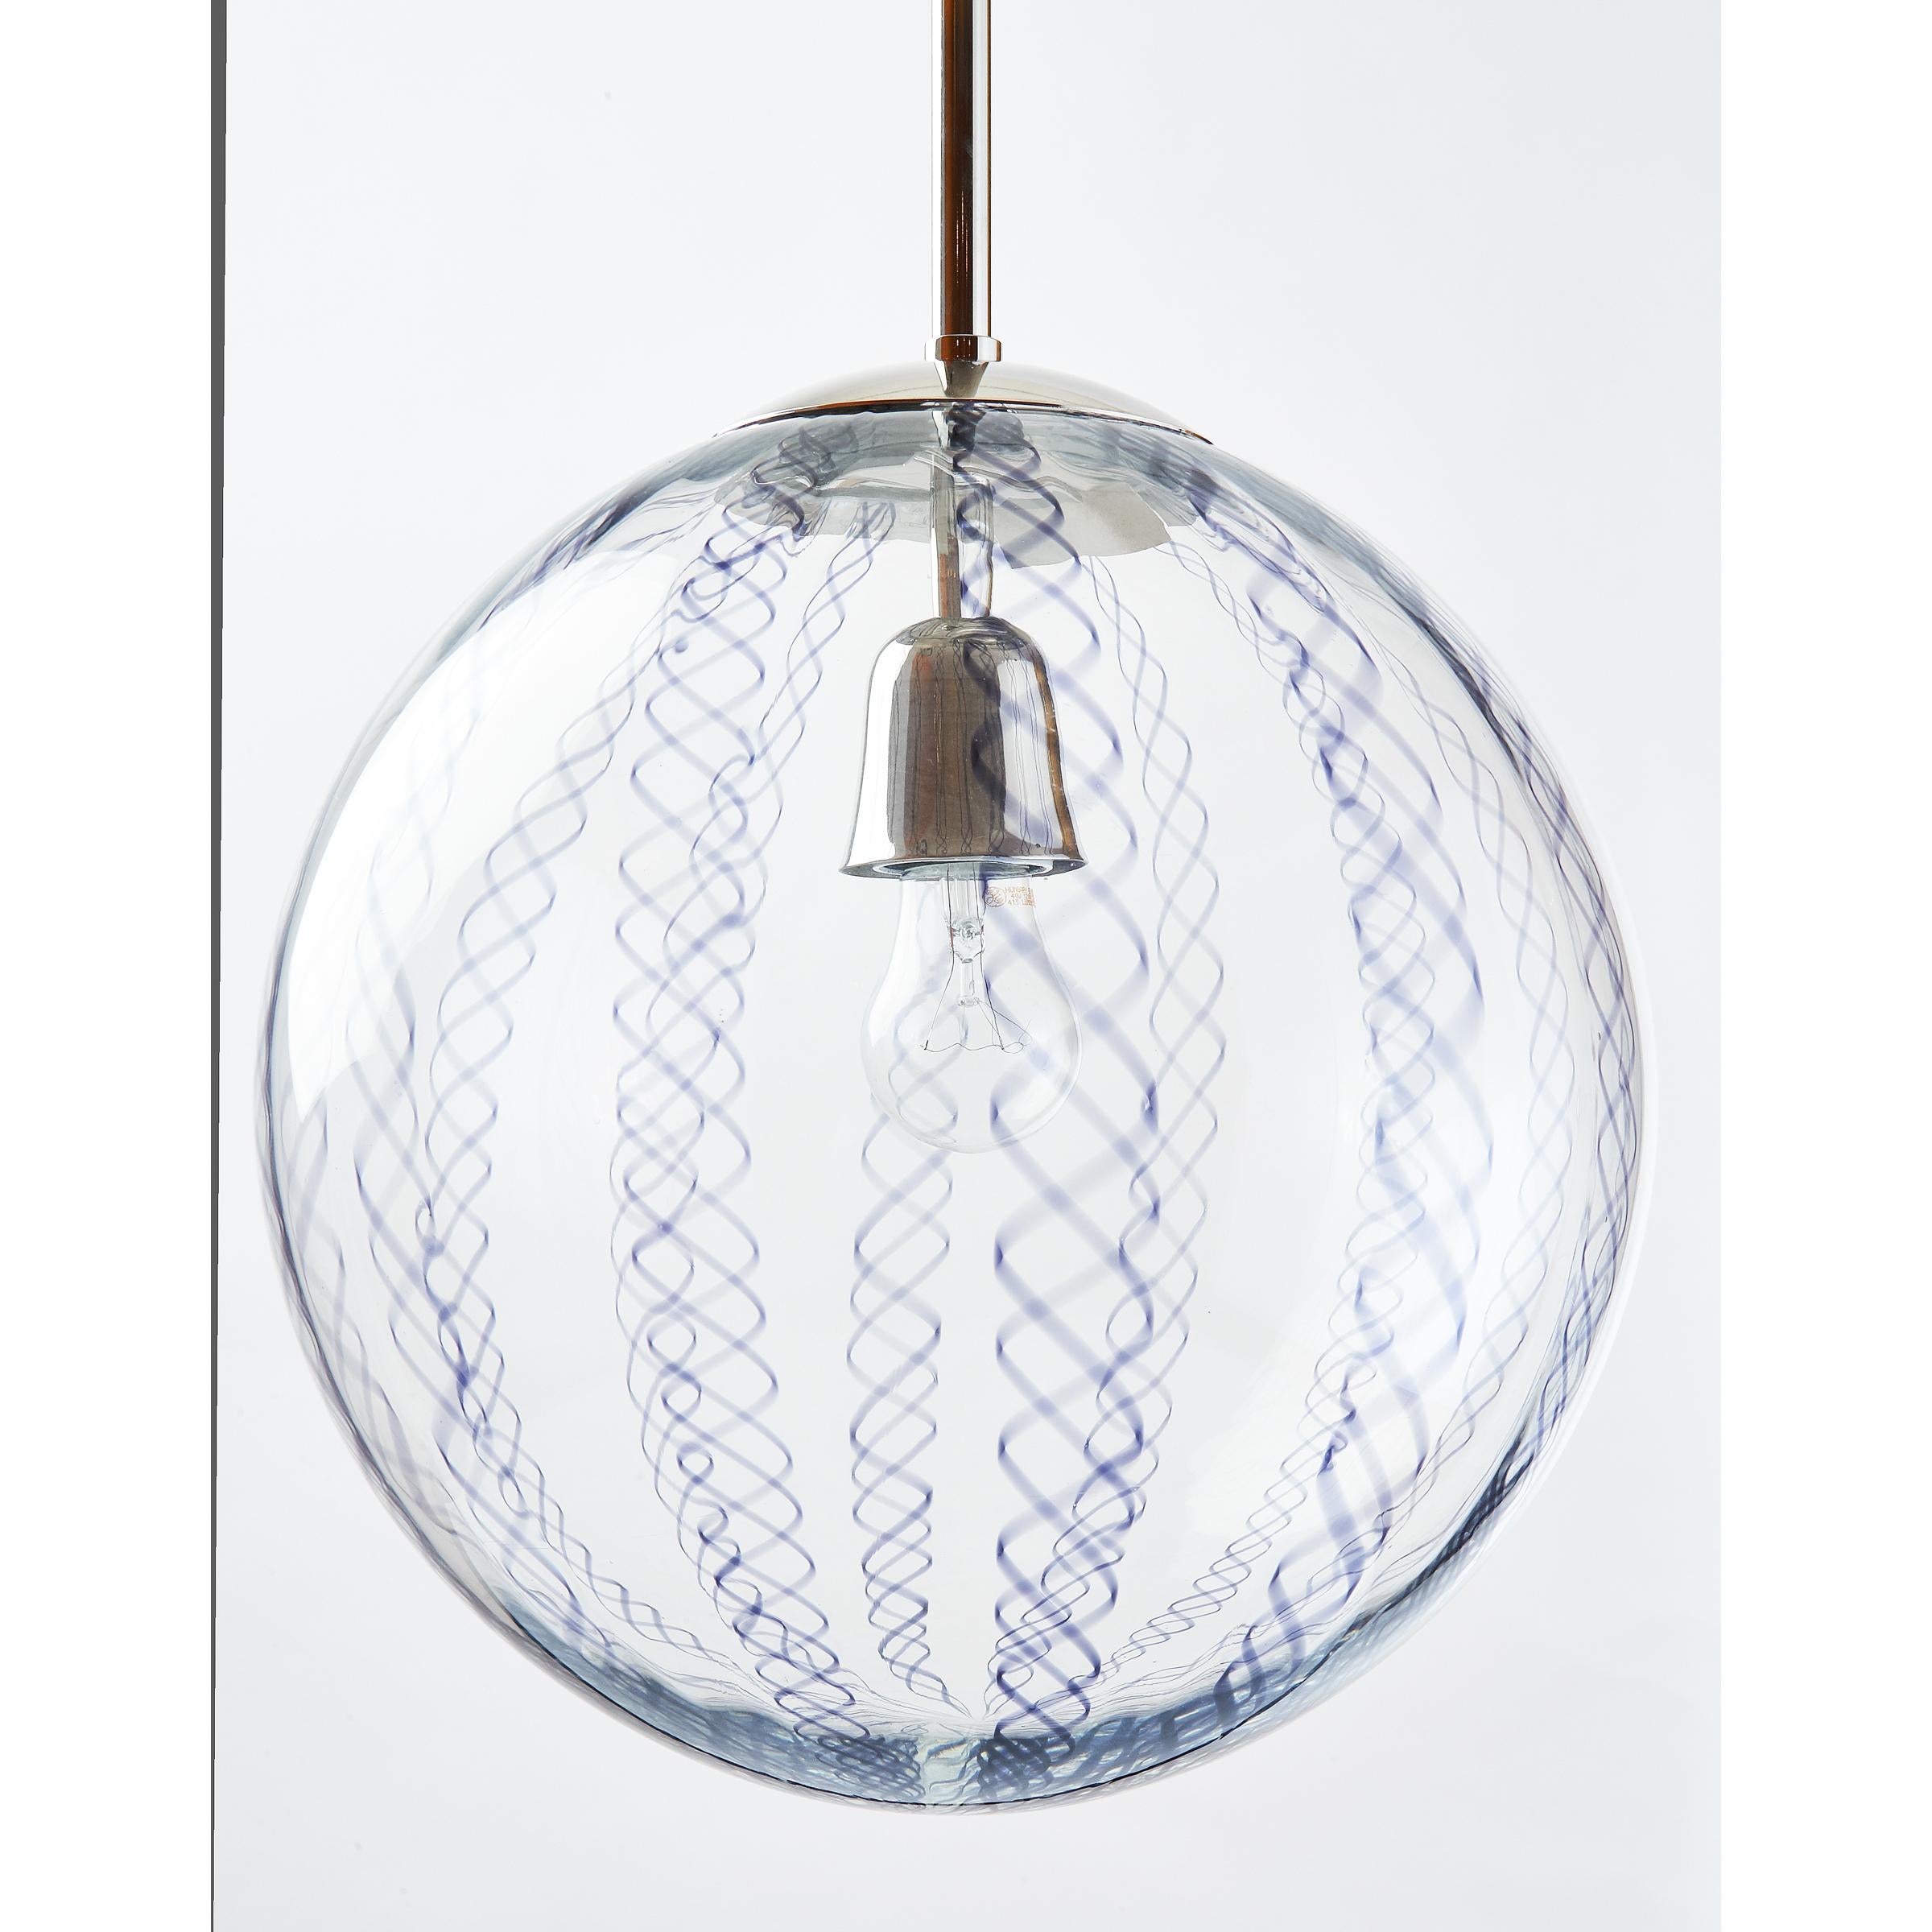 Venini, Italie années 1950
Lanterne en verre clair soufflé avec de délicats motifs en spirale tissés en verre Zanfirico coloré ; montures nickelées.
Mesures : 12 diamètre x 38 hauteur (la hauteur peut être ajustée)
Câblée pour une utilisation aux